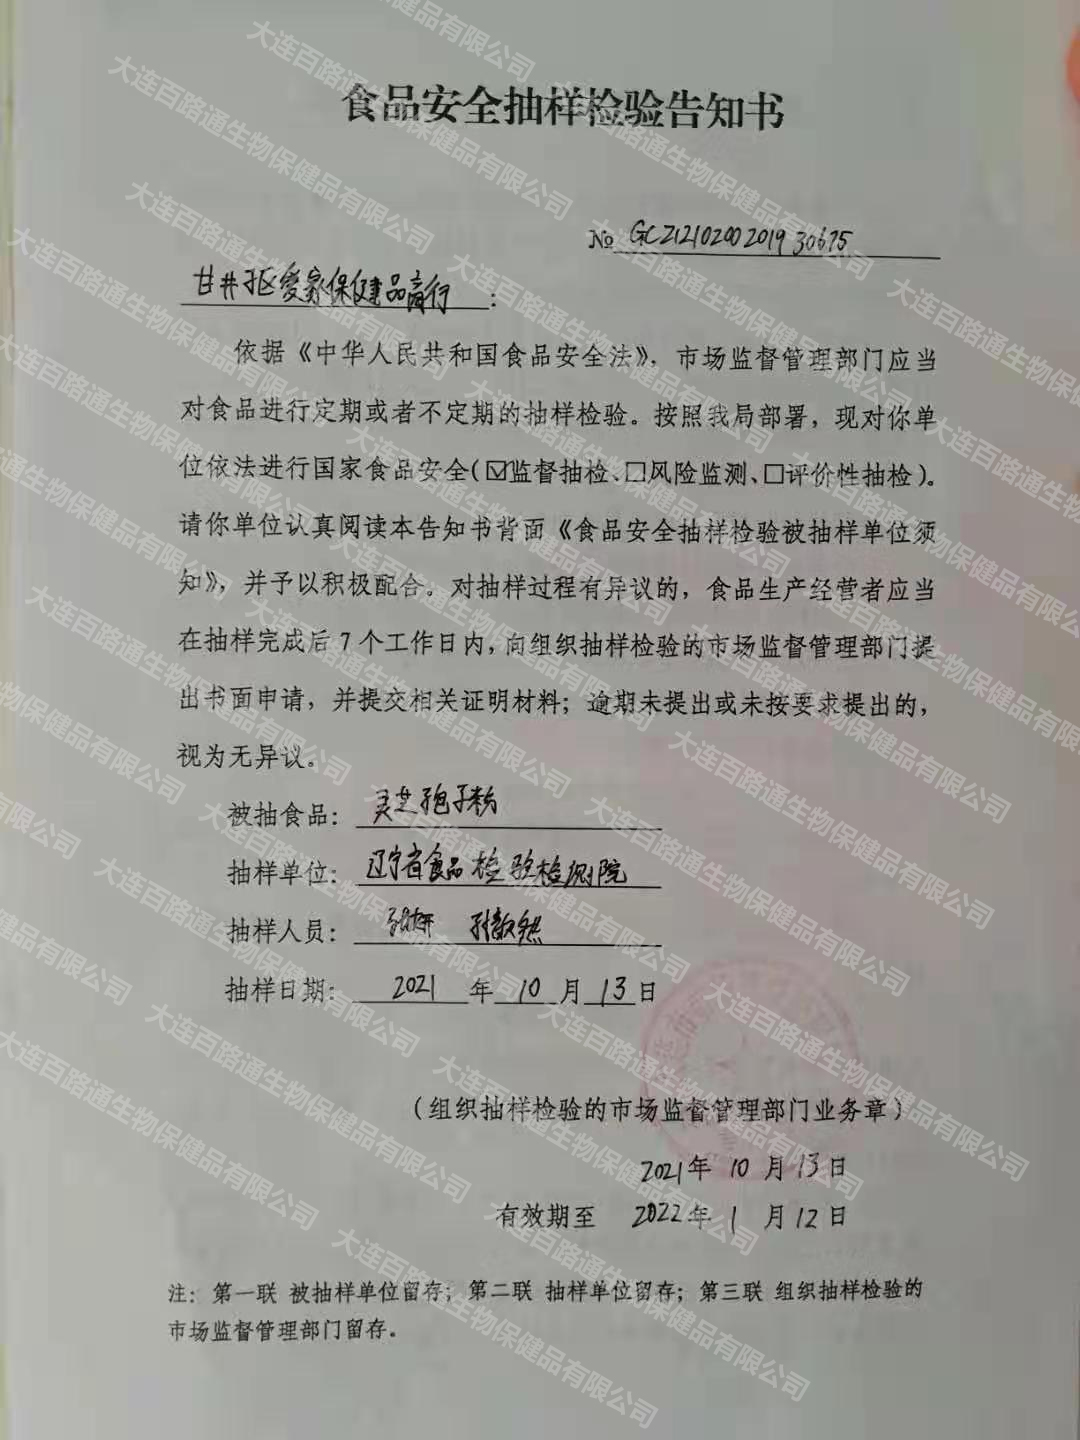 遼寧省市場監管局抽檢百路通靈芝孢子粉